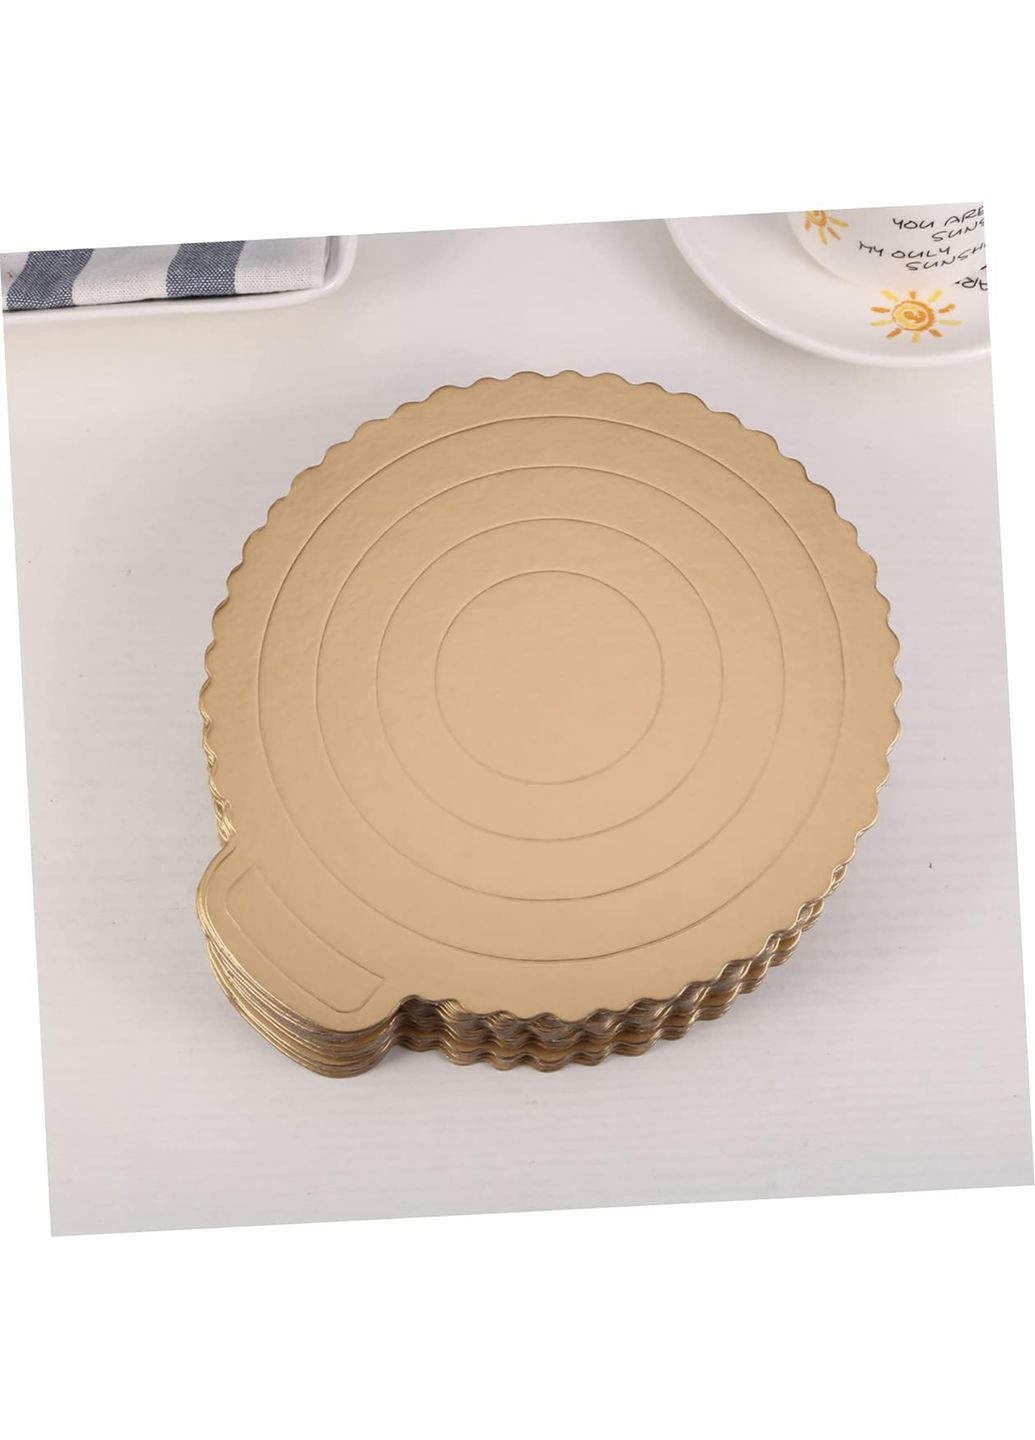 Підкладка картонна для торта підставка кондитерська під торт D 24.5 см золота Kitchen Master (285896778)